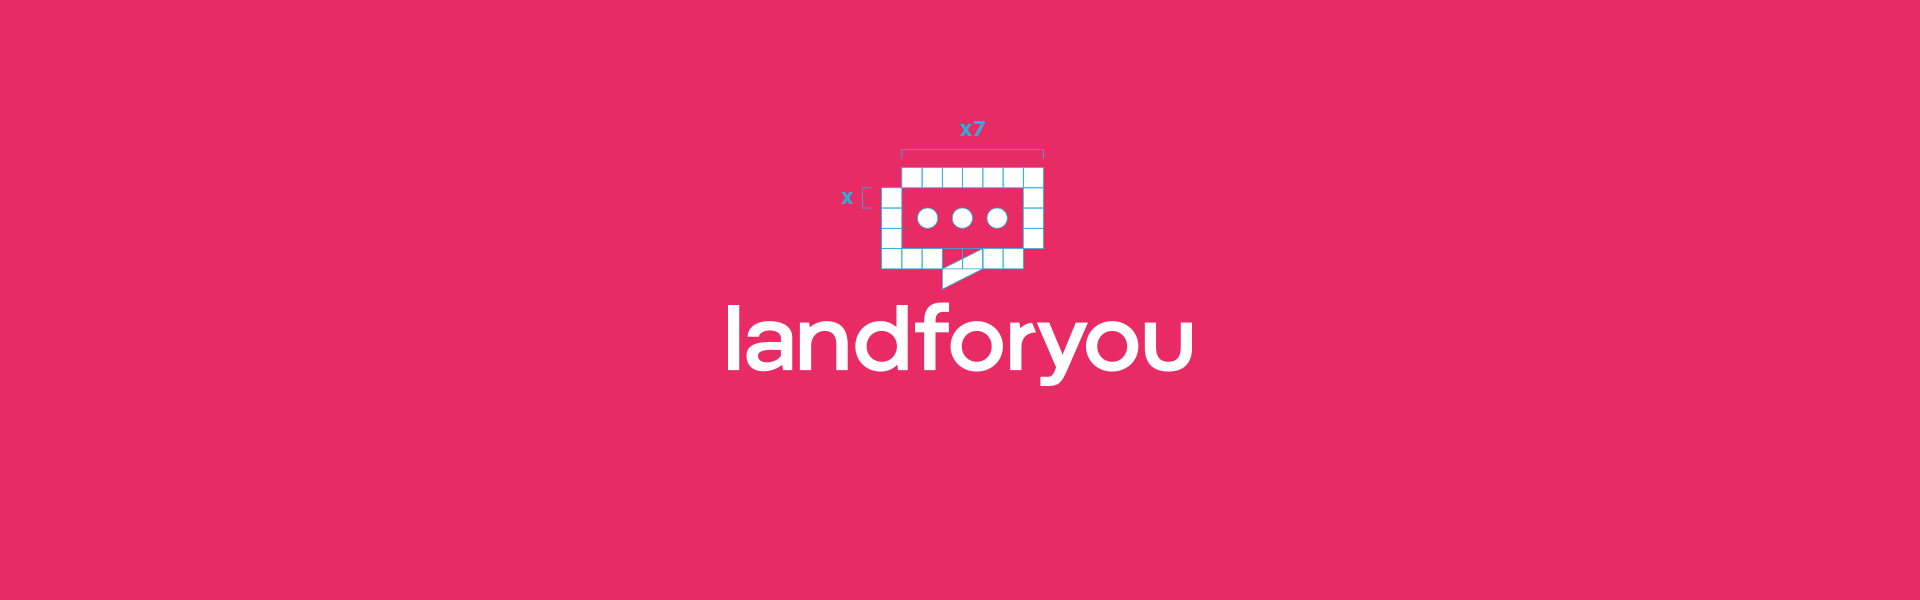 landforyou costruzione logo